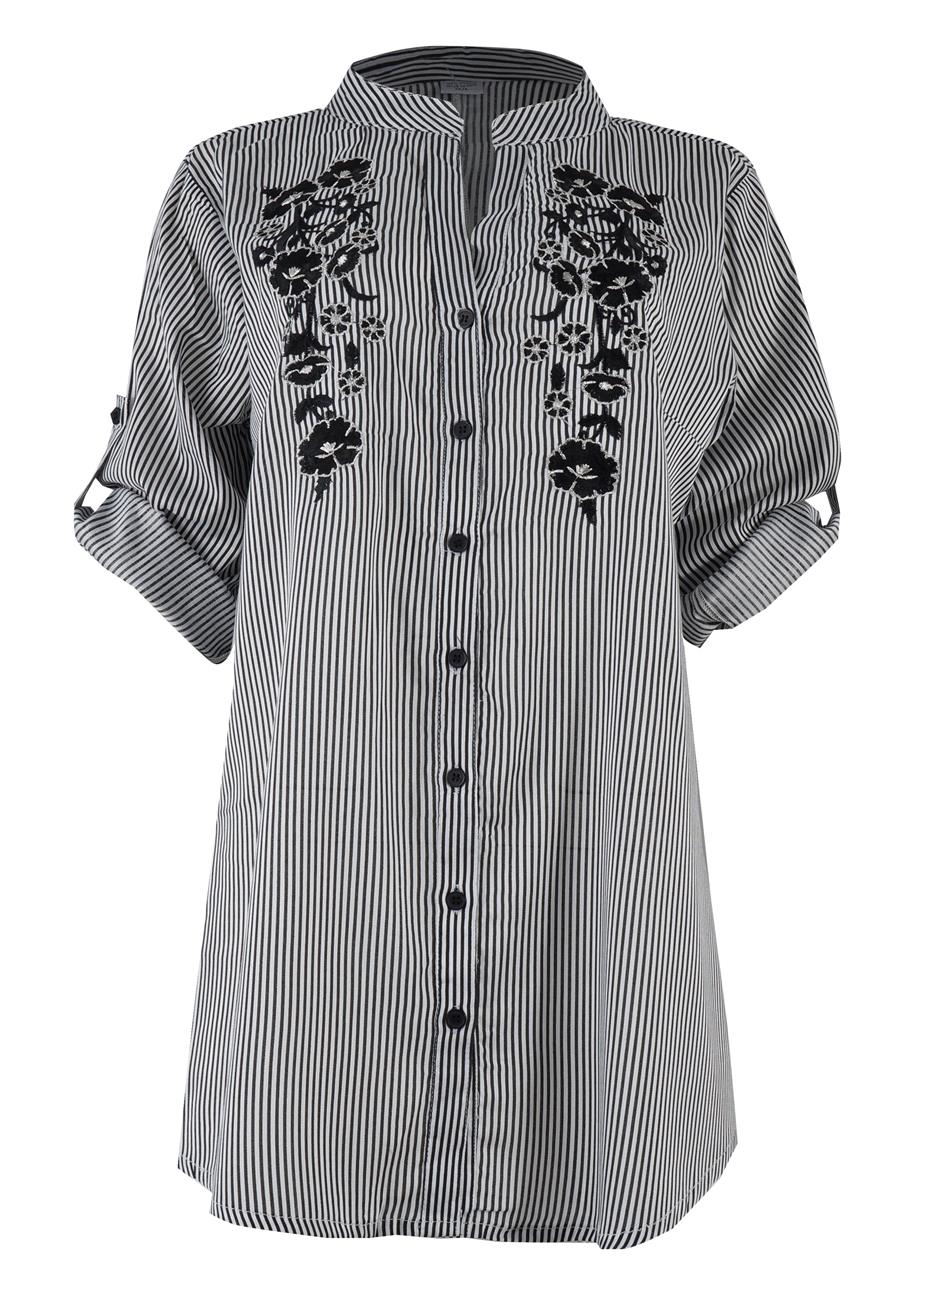 Γυναικείο καφτάνι πουκαμίσα με κέντημα κουμπιά.Navy collection